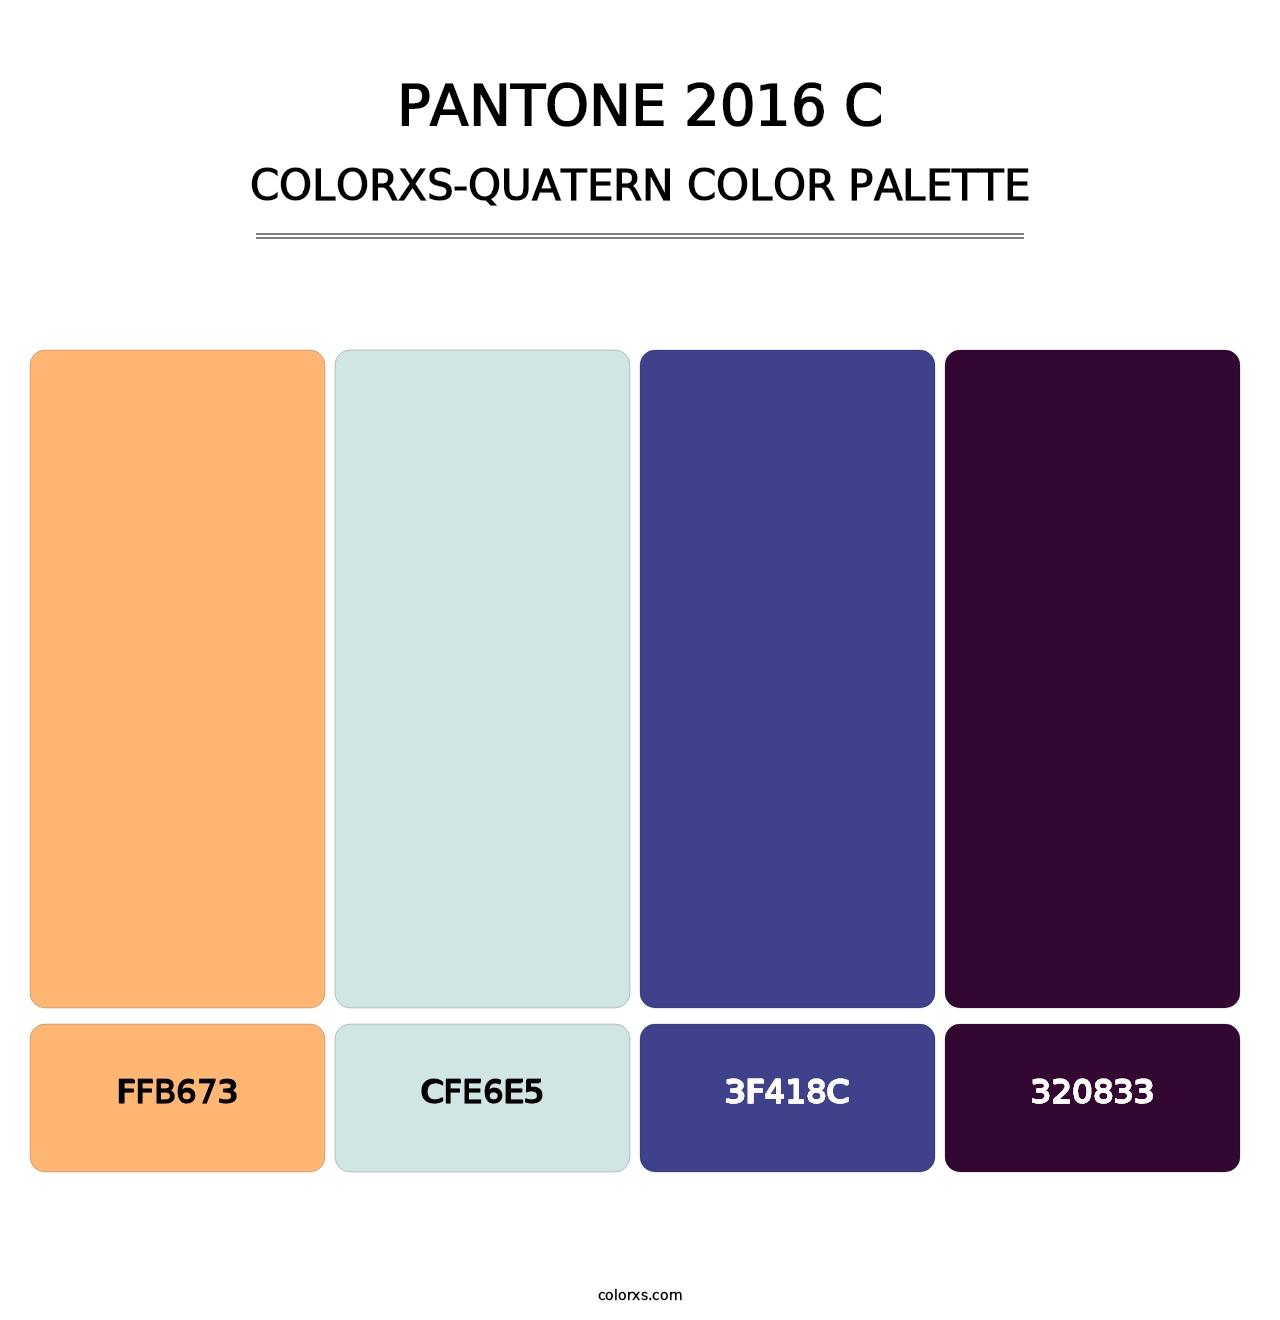 PANTONE 2016 C - Colorxs Quatern Palette